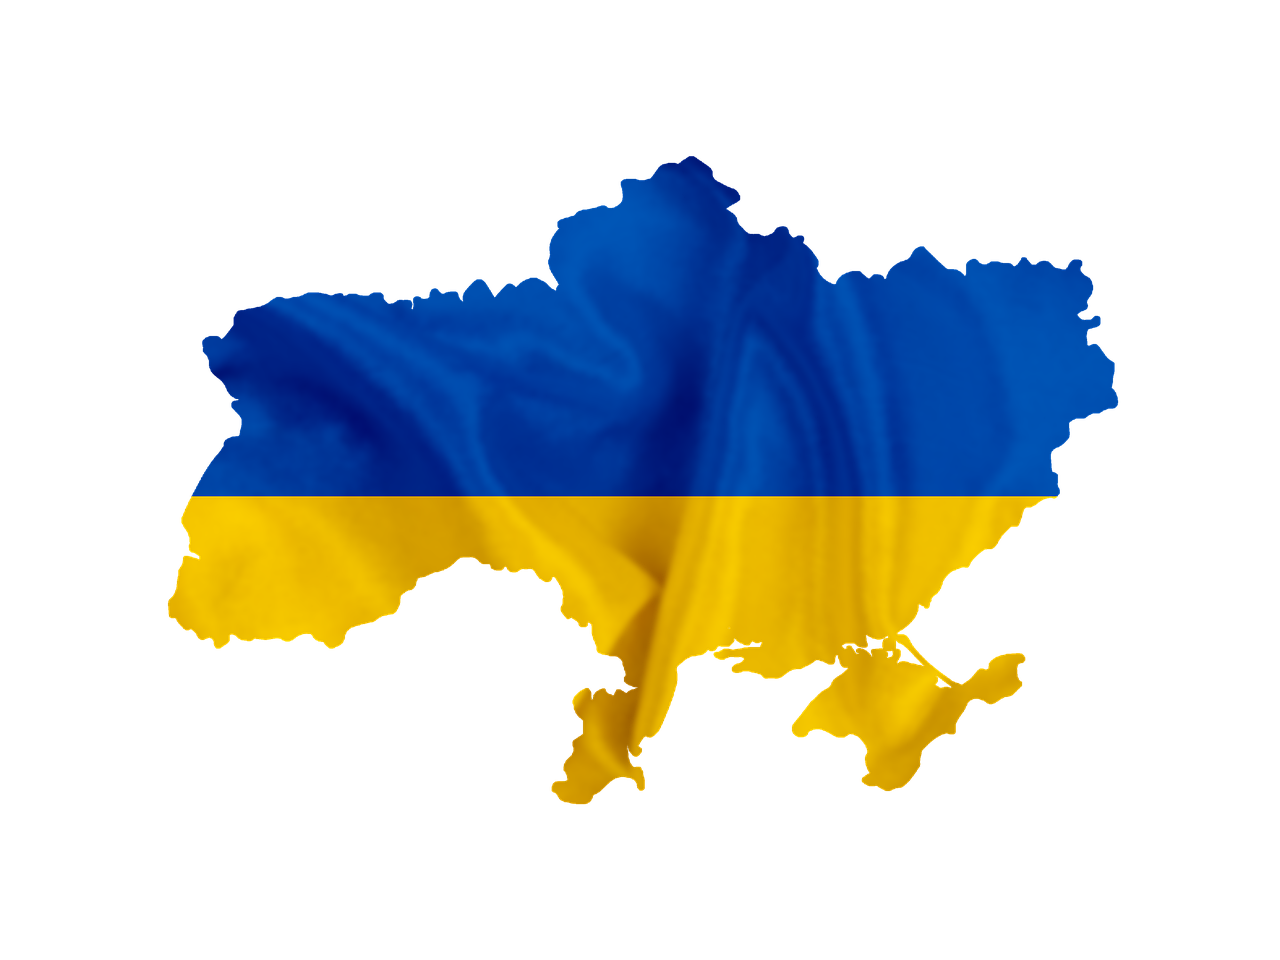 Tájékoztatás az Ukrajna területéről érkezett, ukrán állampolgársággal rendelkező személyek munkavállalásának támogatásáról szóló Kormány rendeletről